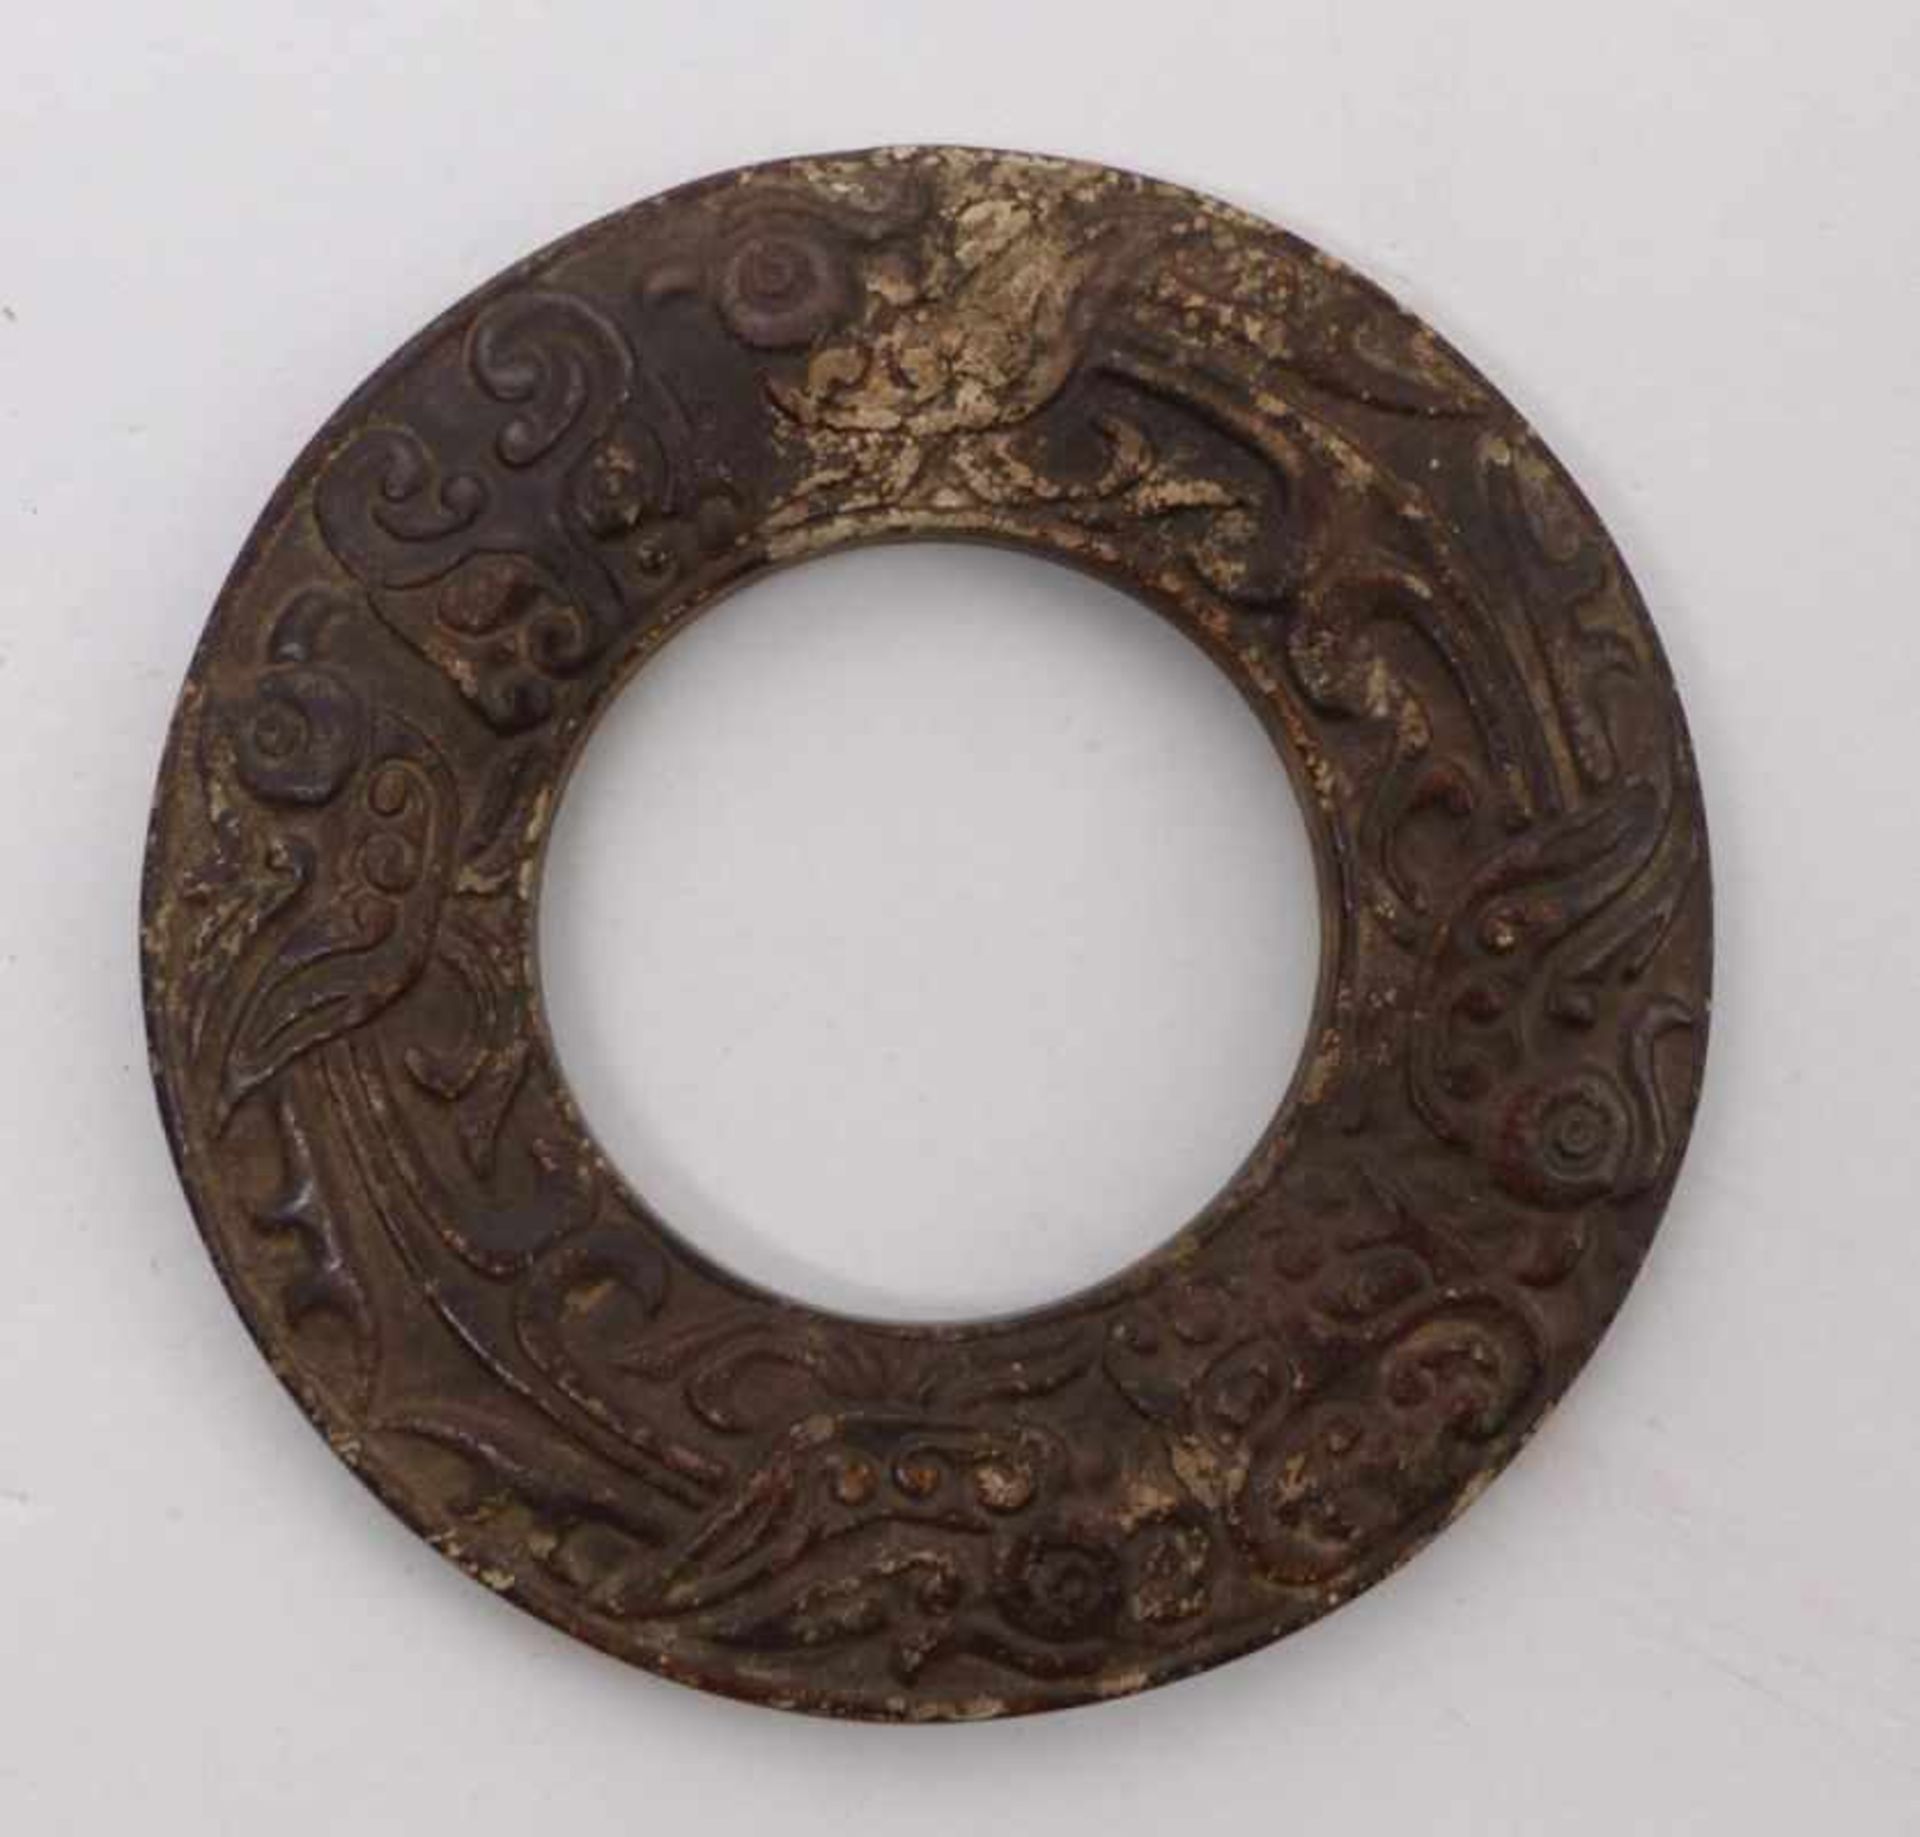 Bi-ScheibeChina, wohl Han-Dynastie 206 v. Chr. - 220 n. Chr.Flache, runde Form mit großer, zentraler - Bild 2 aus 2